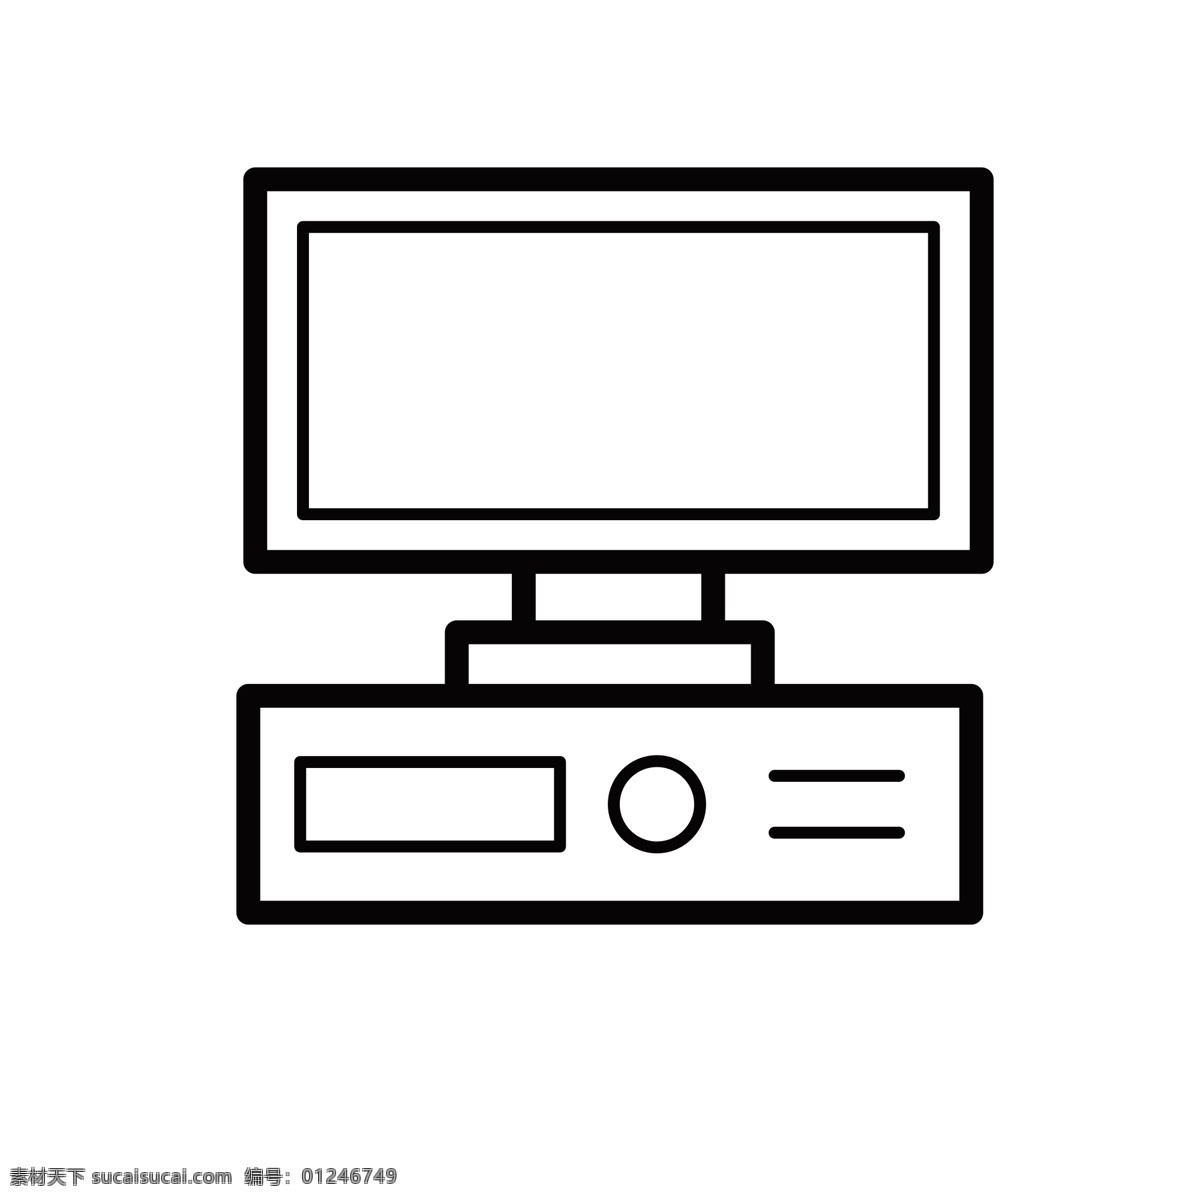 扁平化电脑 台式机 电脑 扁平化ui ui图标 手机图标 界面ui 网页ui h5图标